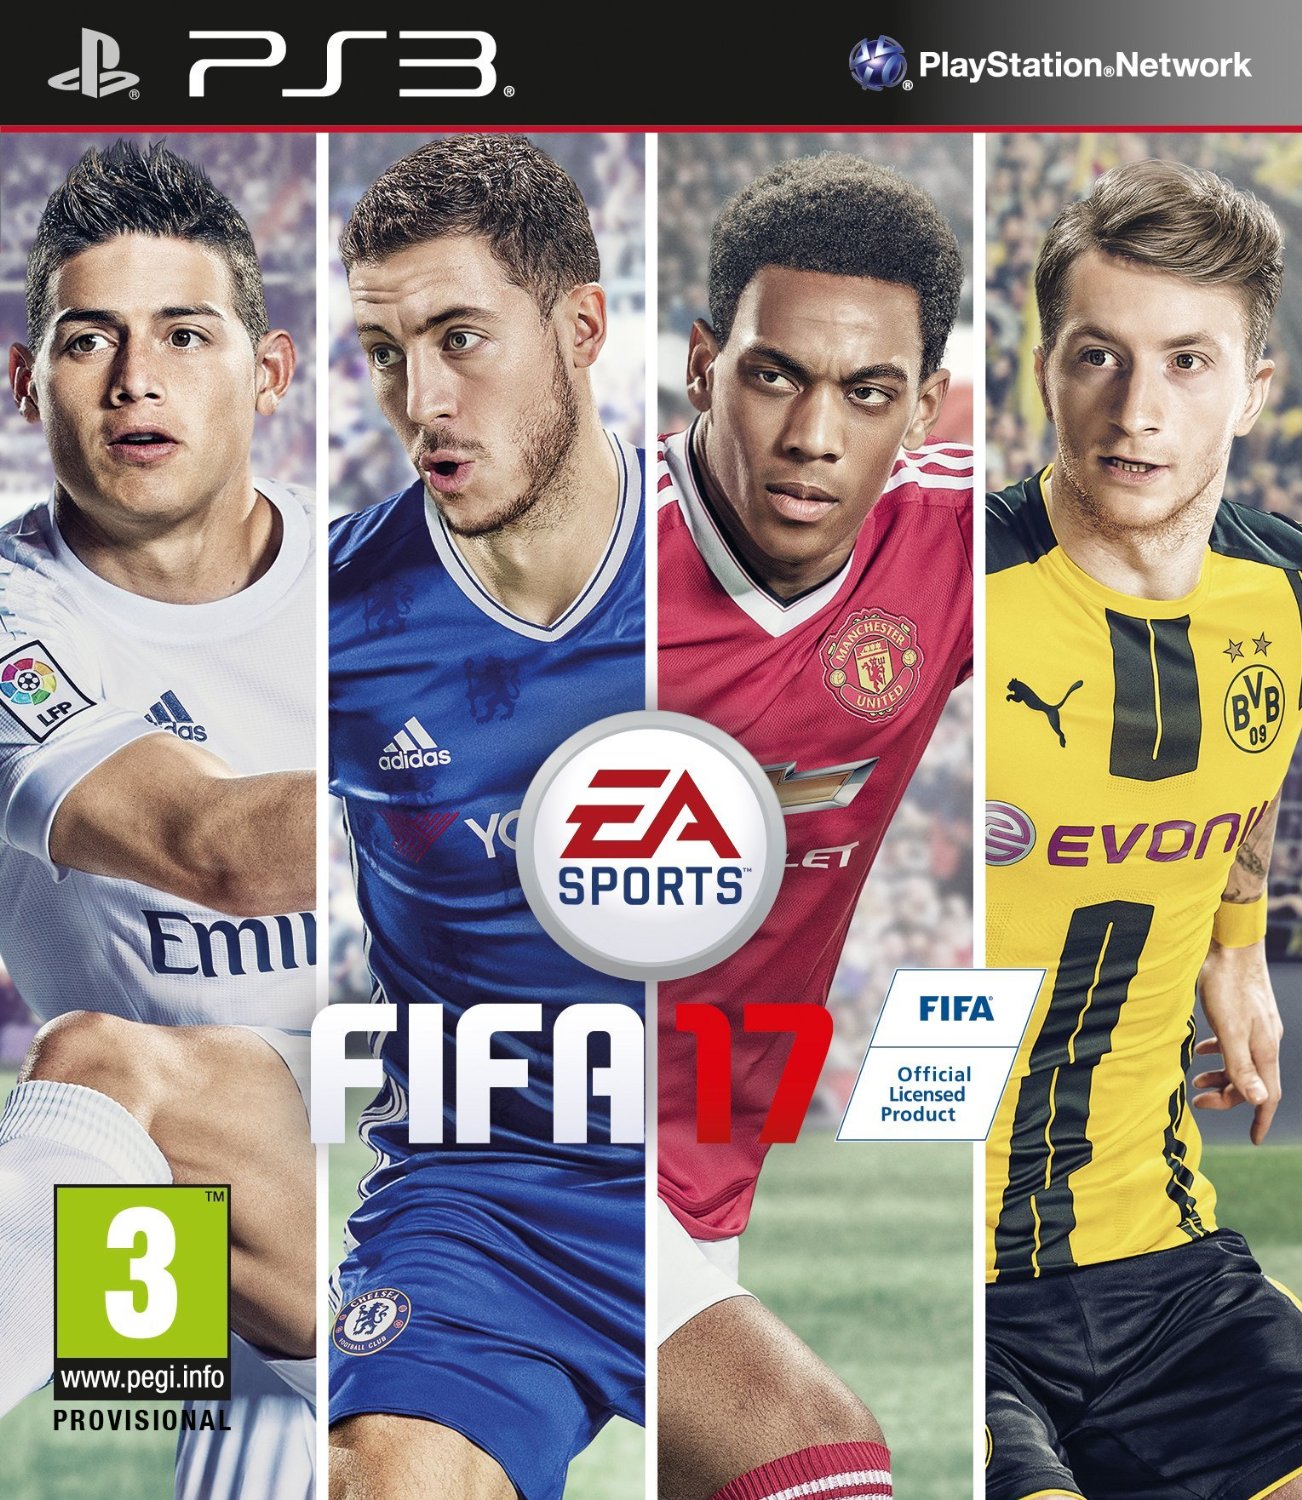 FIFA 17 (PS3), EA Sports